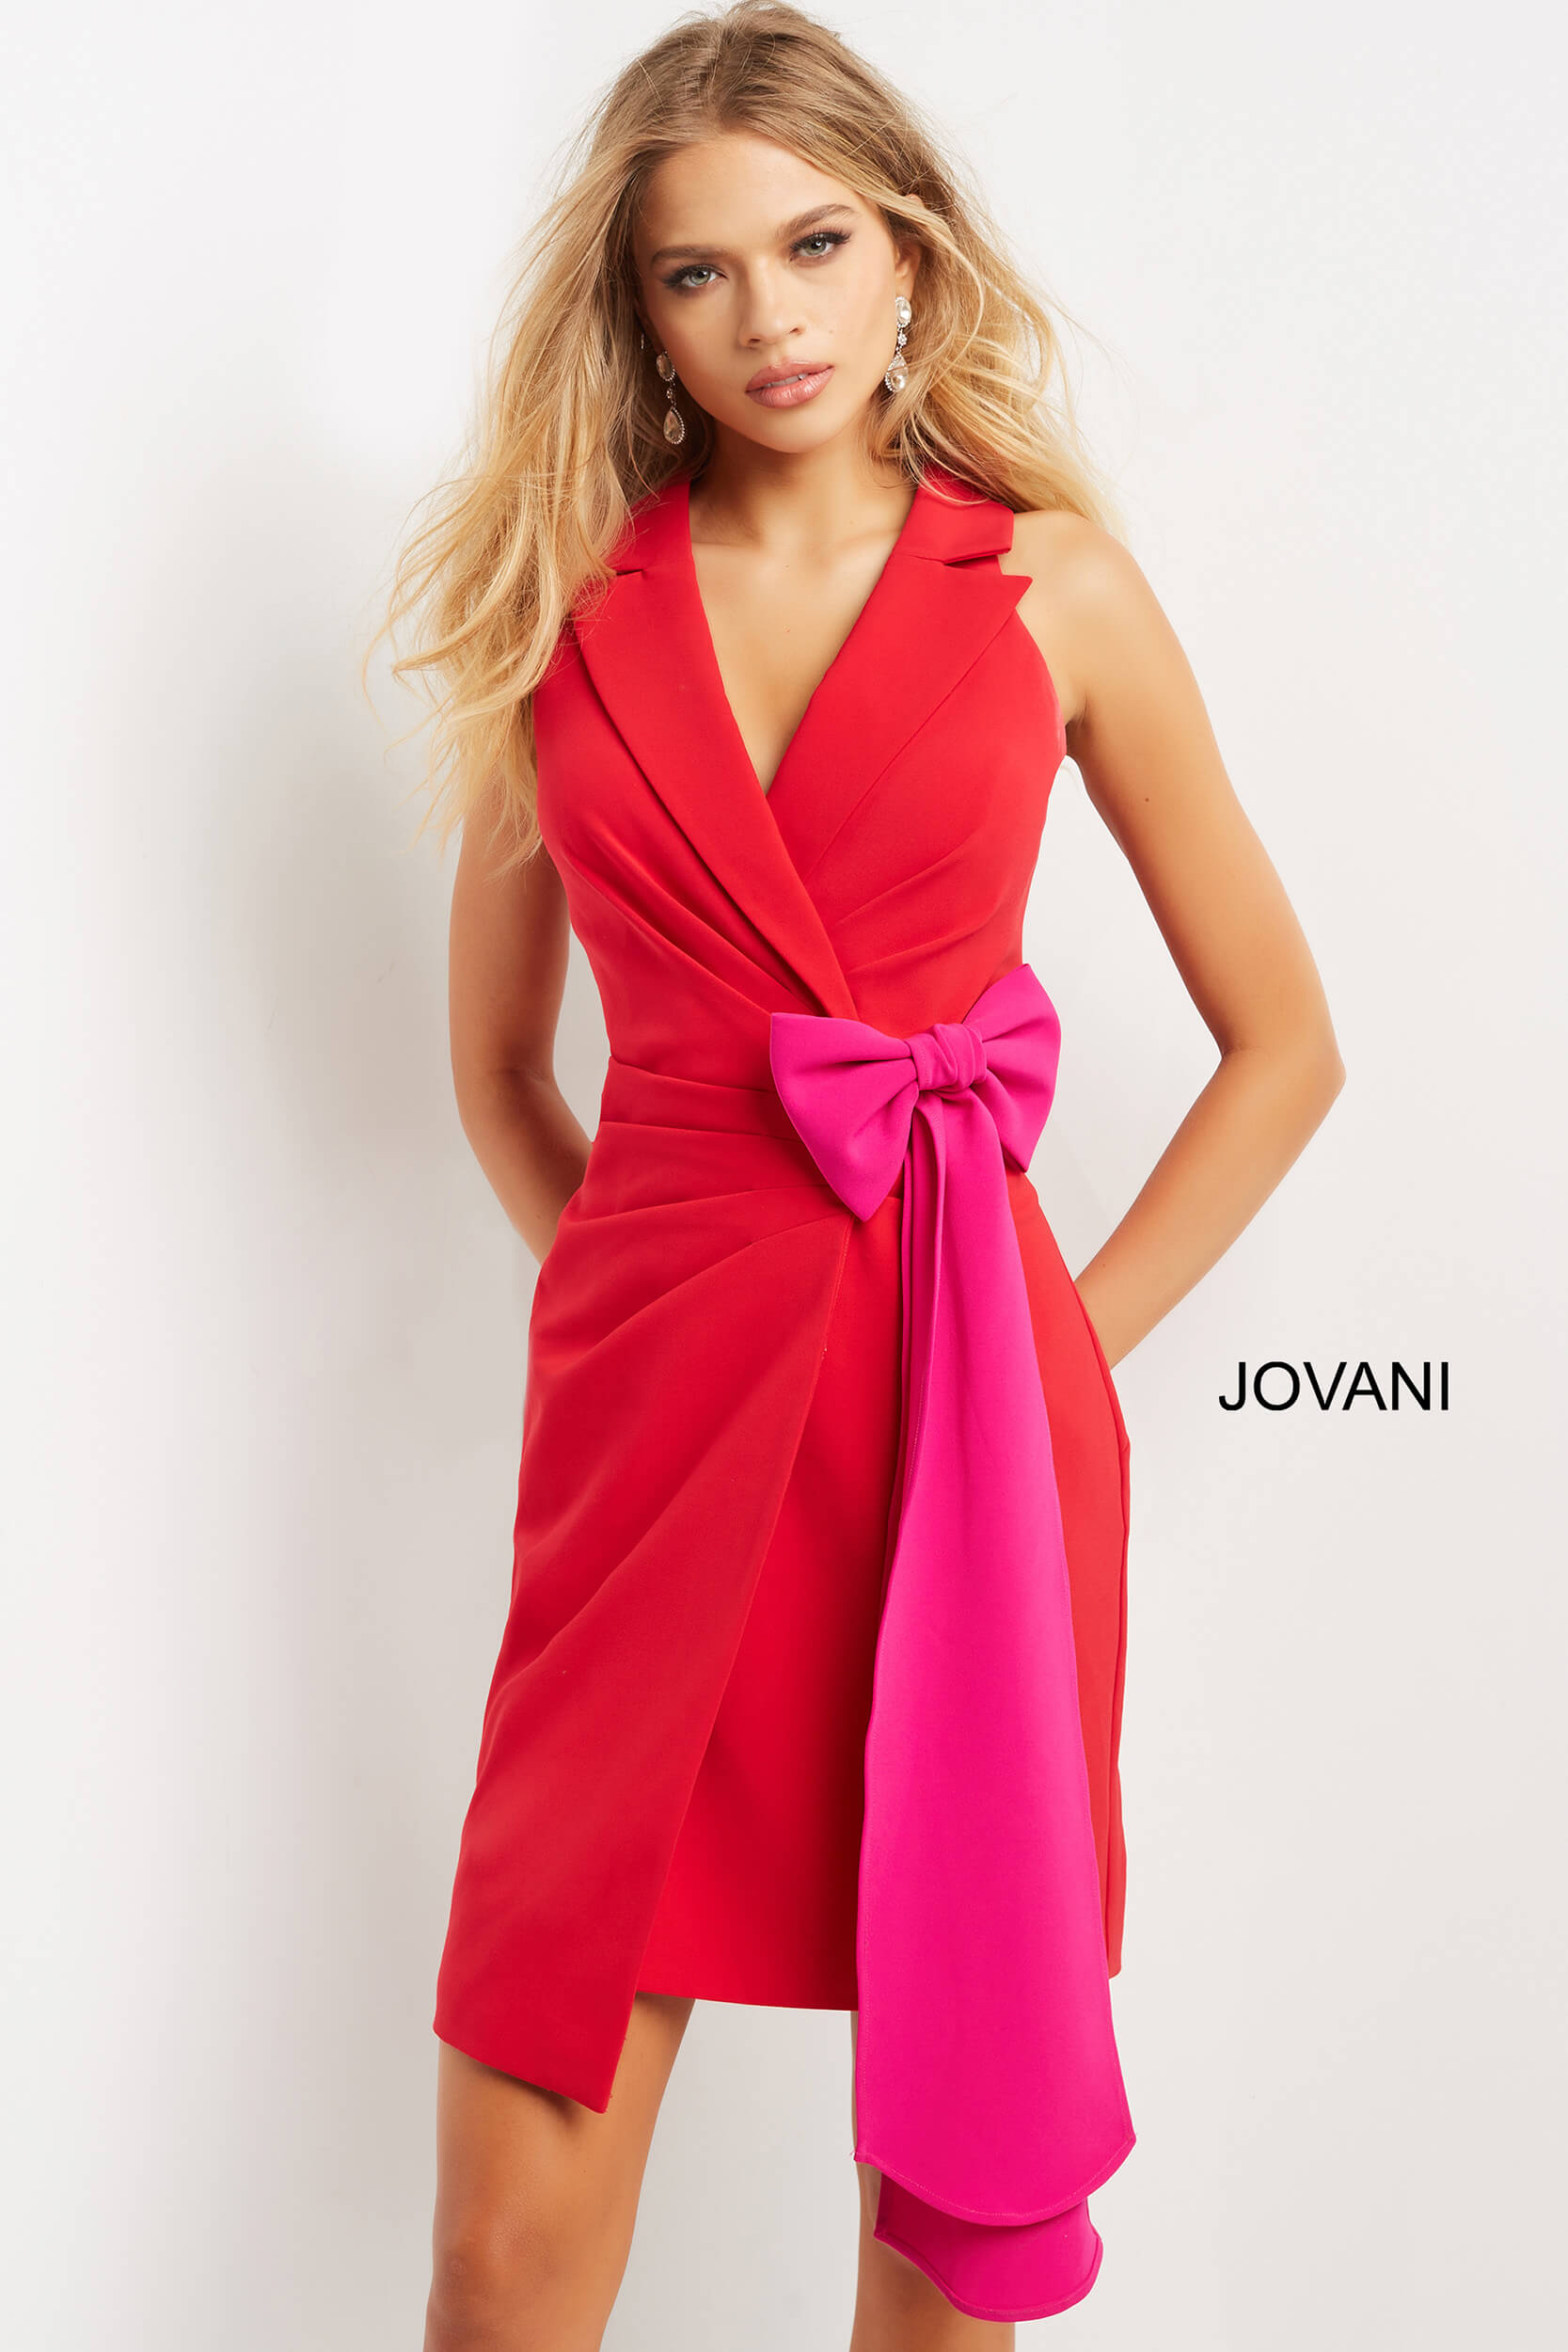 Jovani 07961 Red Fuchsia Knee Length V Neck Contemporary Dress